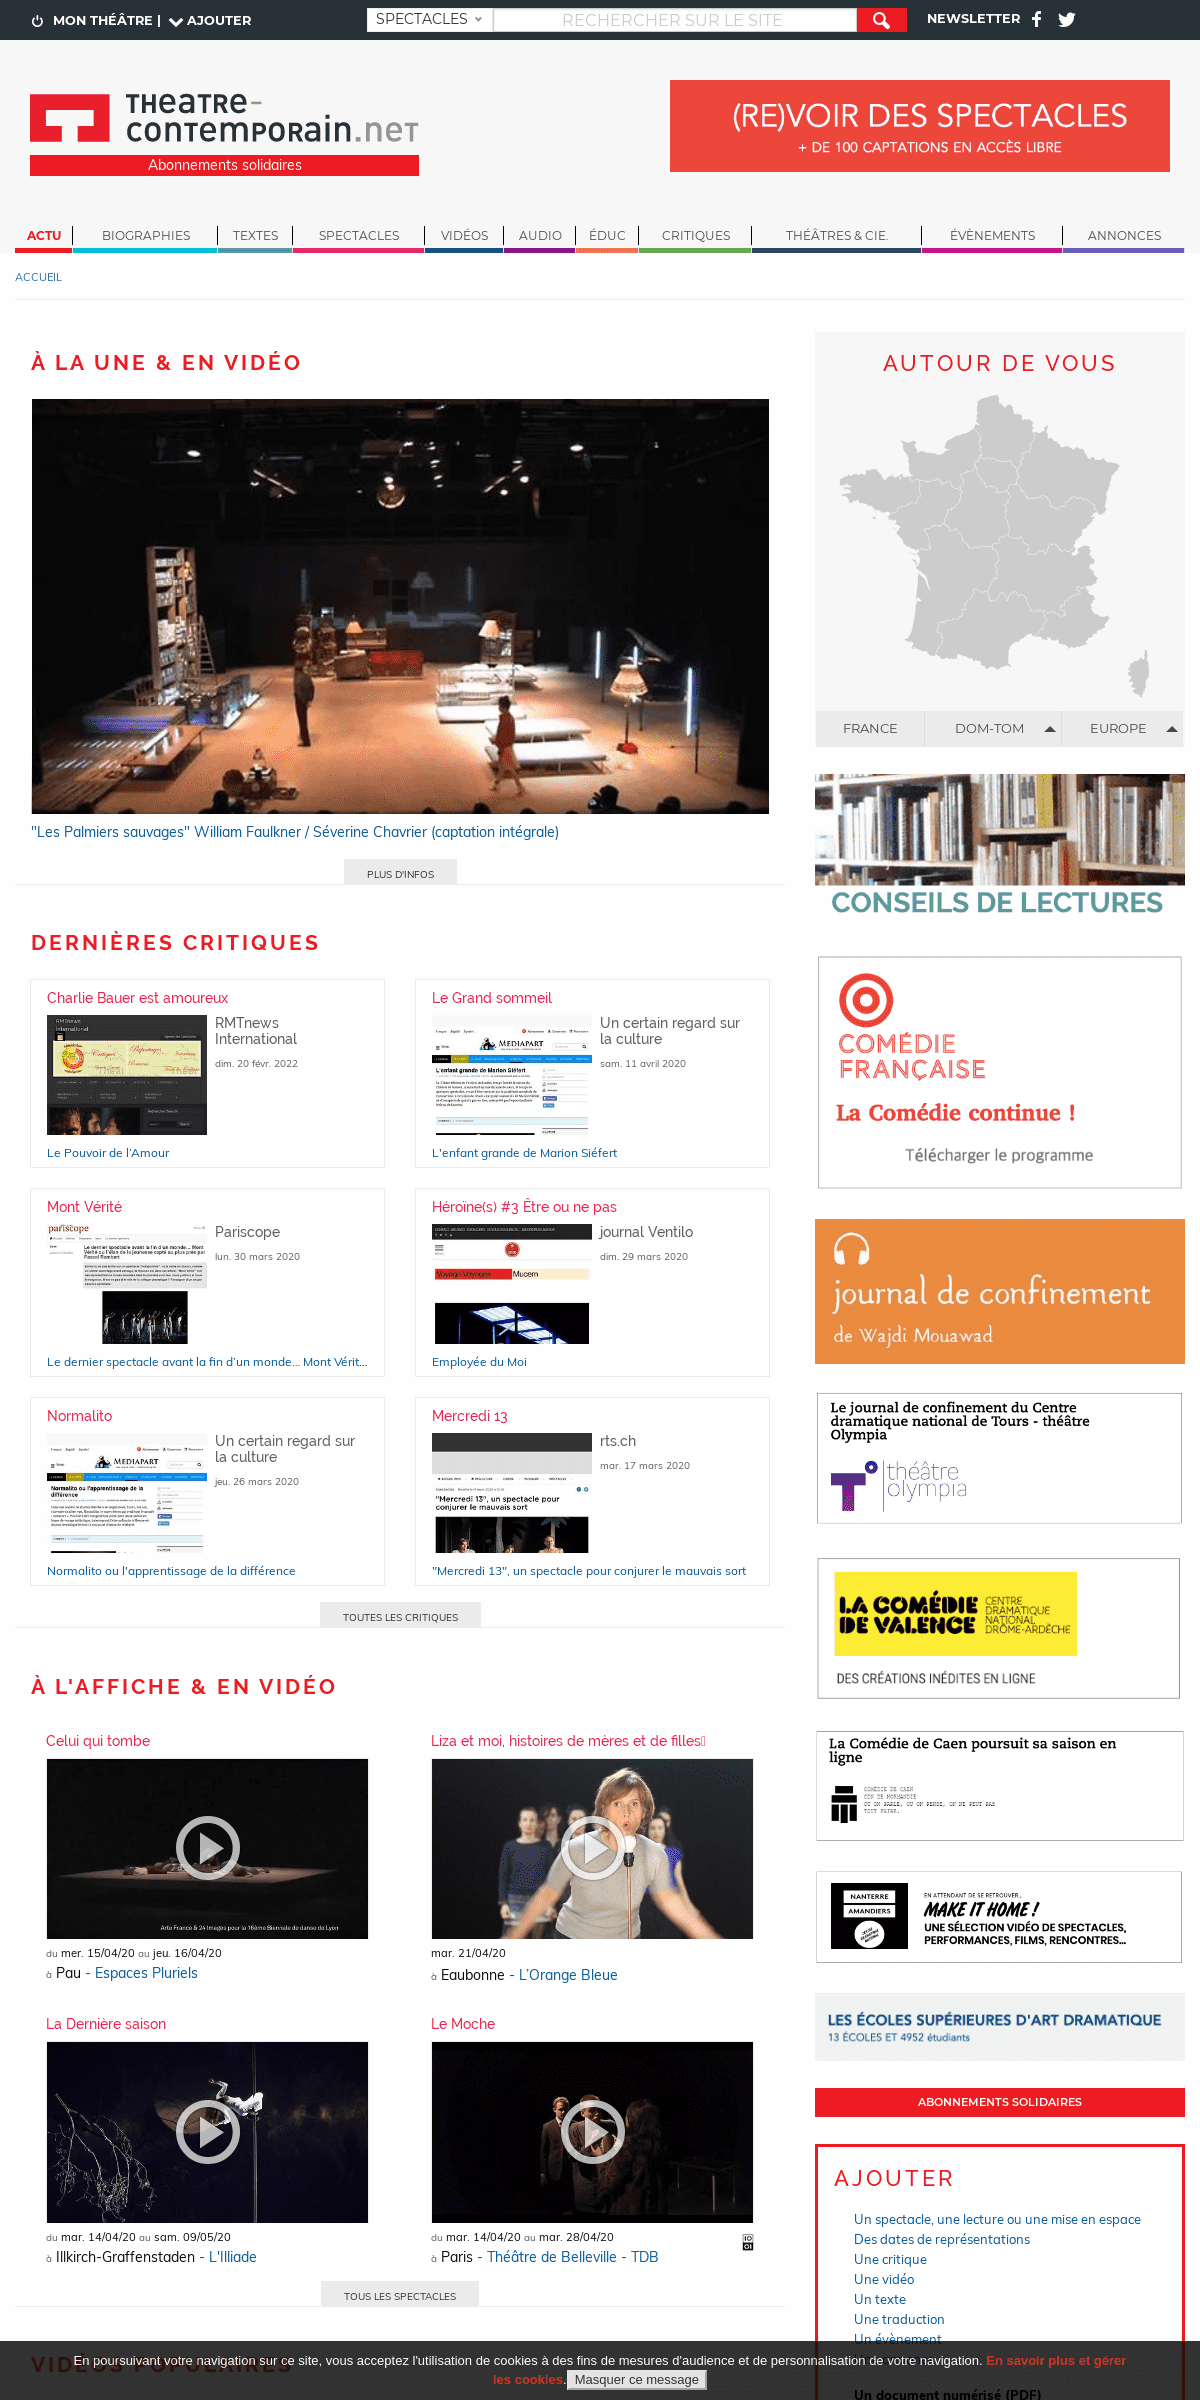 A complete backup of theatre-contemporain.net